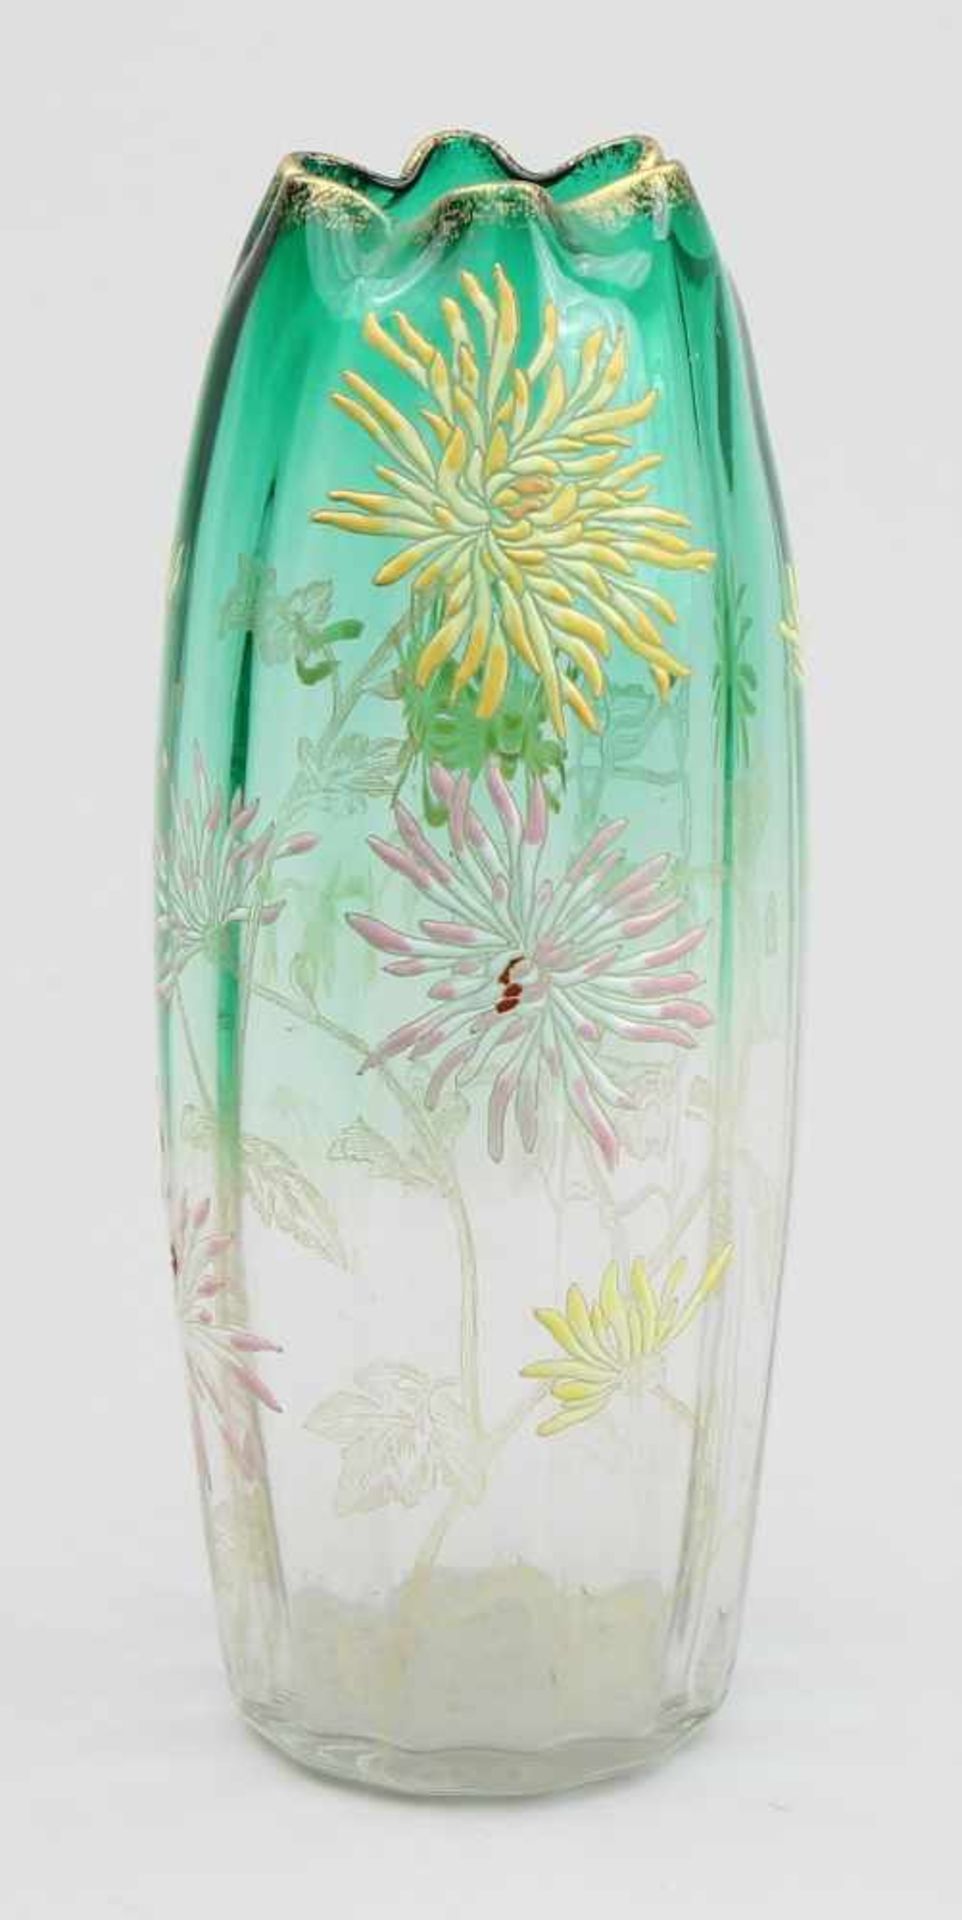 Legras - Vase Farbloses und grünes Glas modelgeblasen, pastose farbige Emailbemalung mit